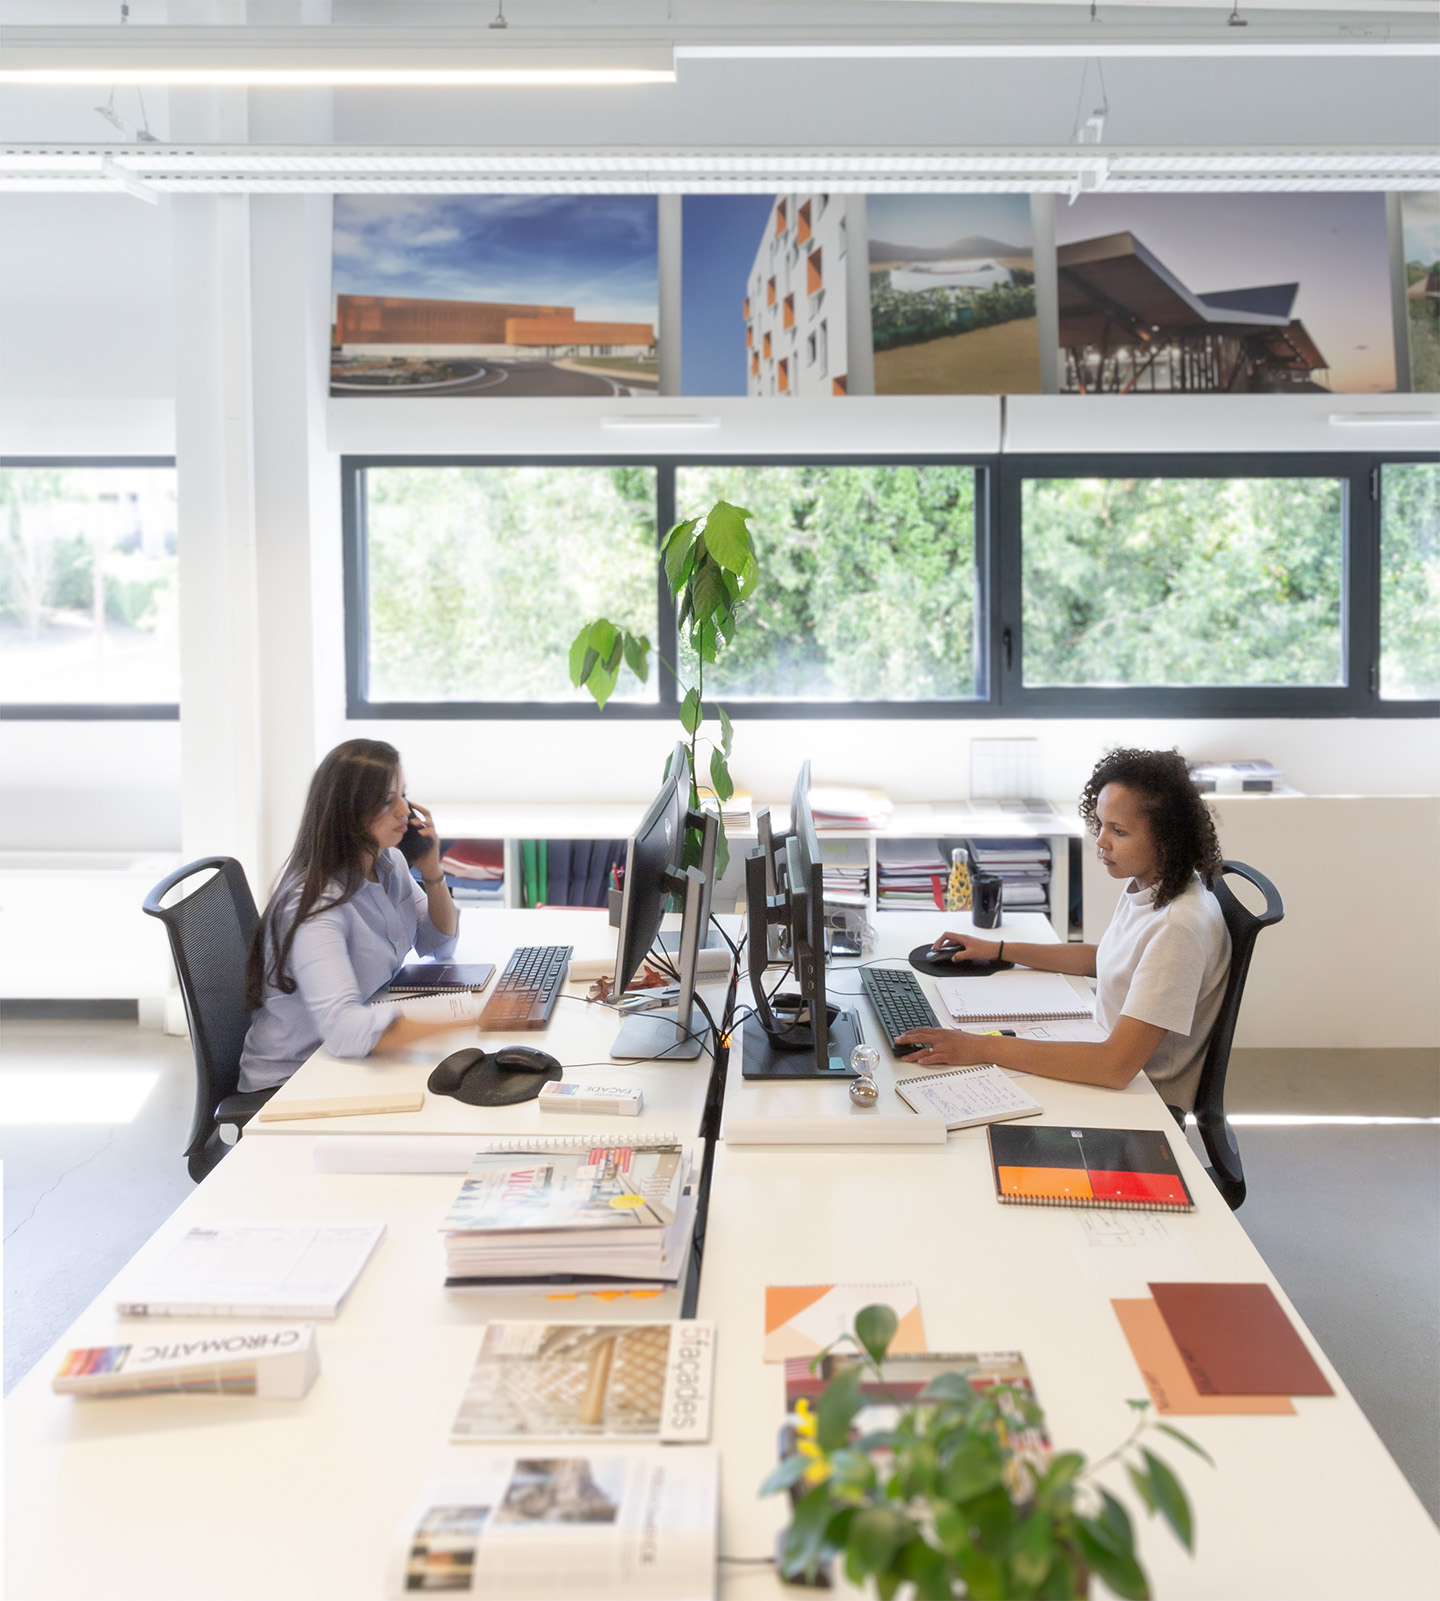 Photographie de deux architectes travaillant sur leur bureau face à face, vue sur le parc végétalisé à travers la fenêtre bandeau